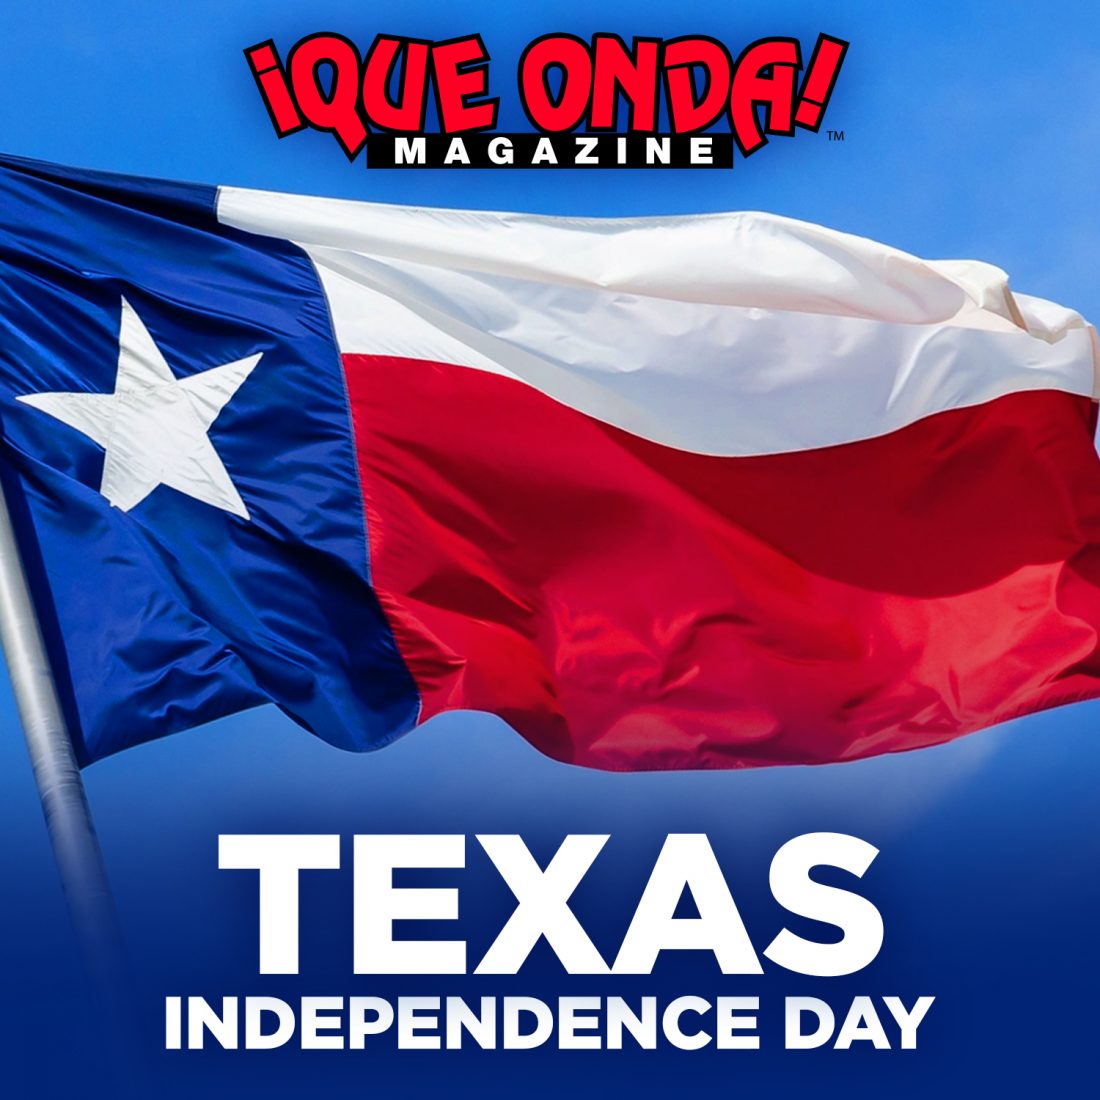 Happy Texas Independence Day ¡Que Onda Magazine!